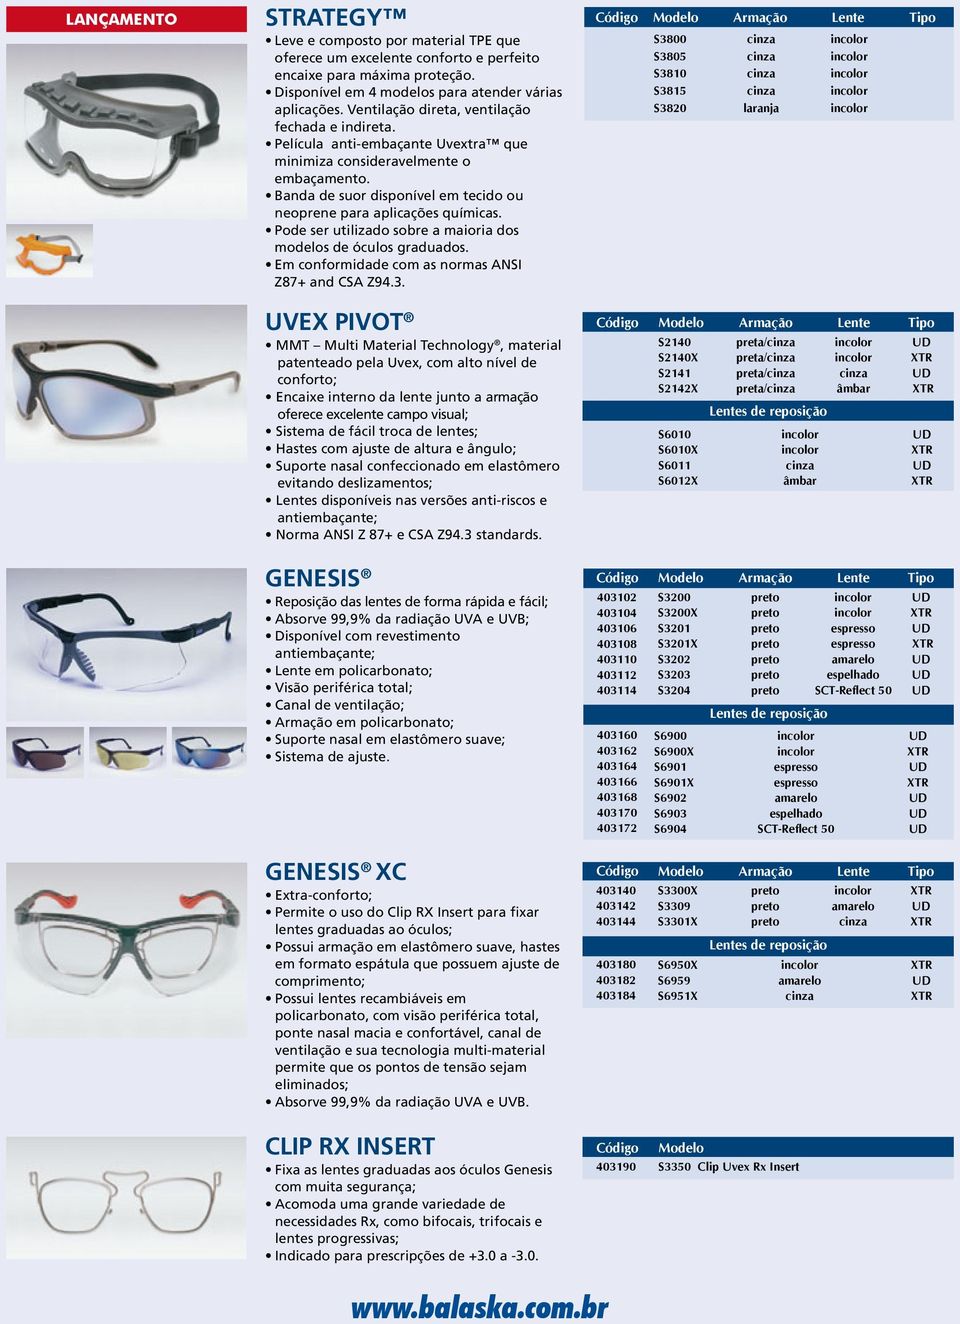 Pode ser utilizado sobre a maioria dos modelos de óculos graduados. Em conformidade com as normas ANSI Z87+ and CSA Z94.3.